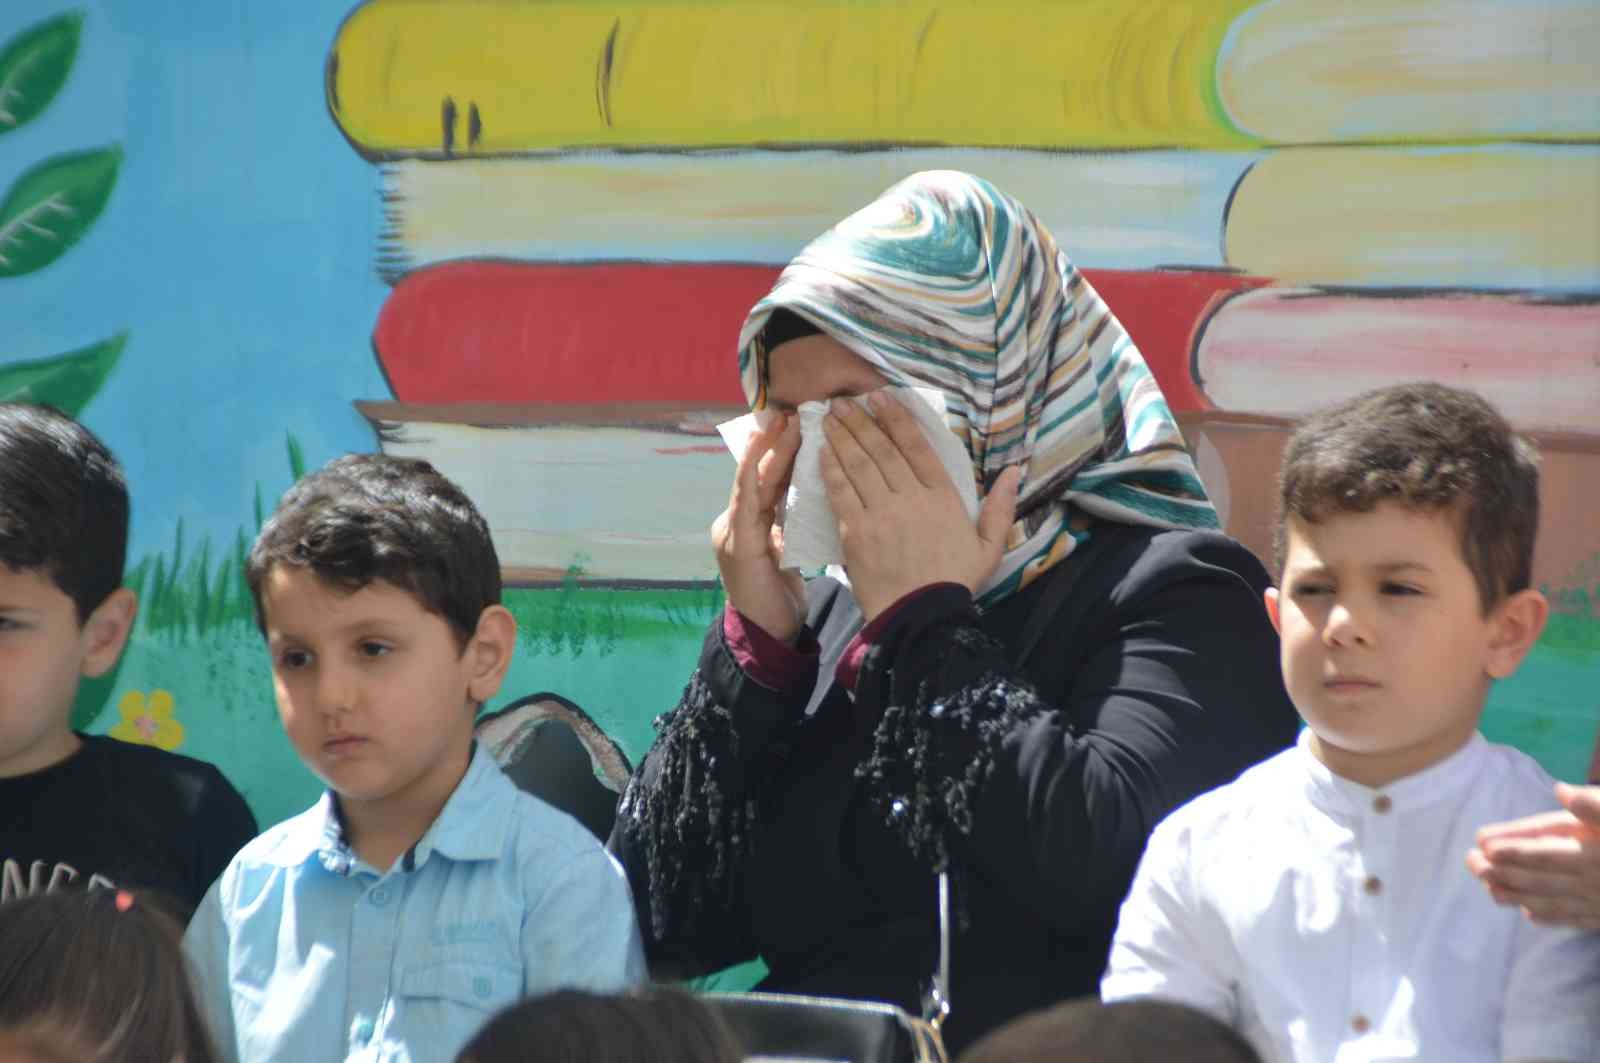 Fatih Belediyesi 8 Mayıs Anneler Günü’nde anneleri ve çocukları ortak bir programda buluşturdu. Annelerine şiirler okuyan ve gösteriler yapan ...